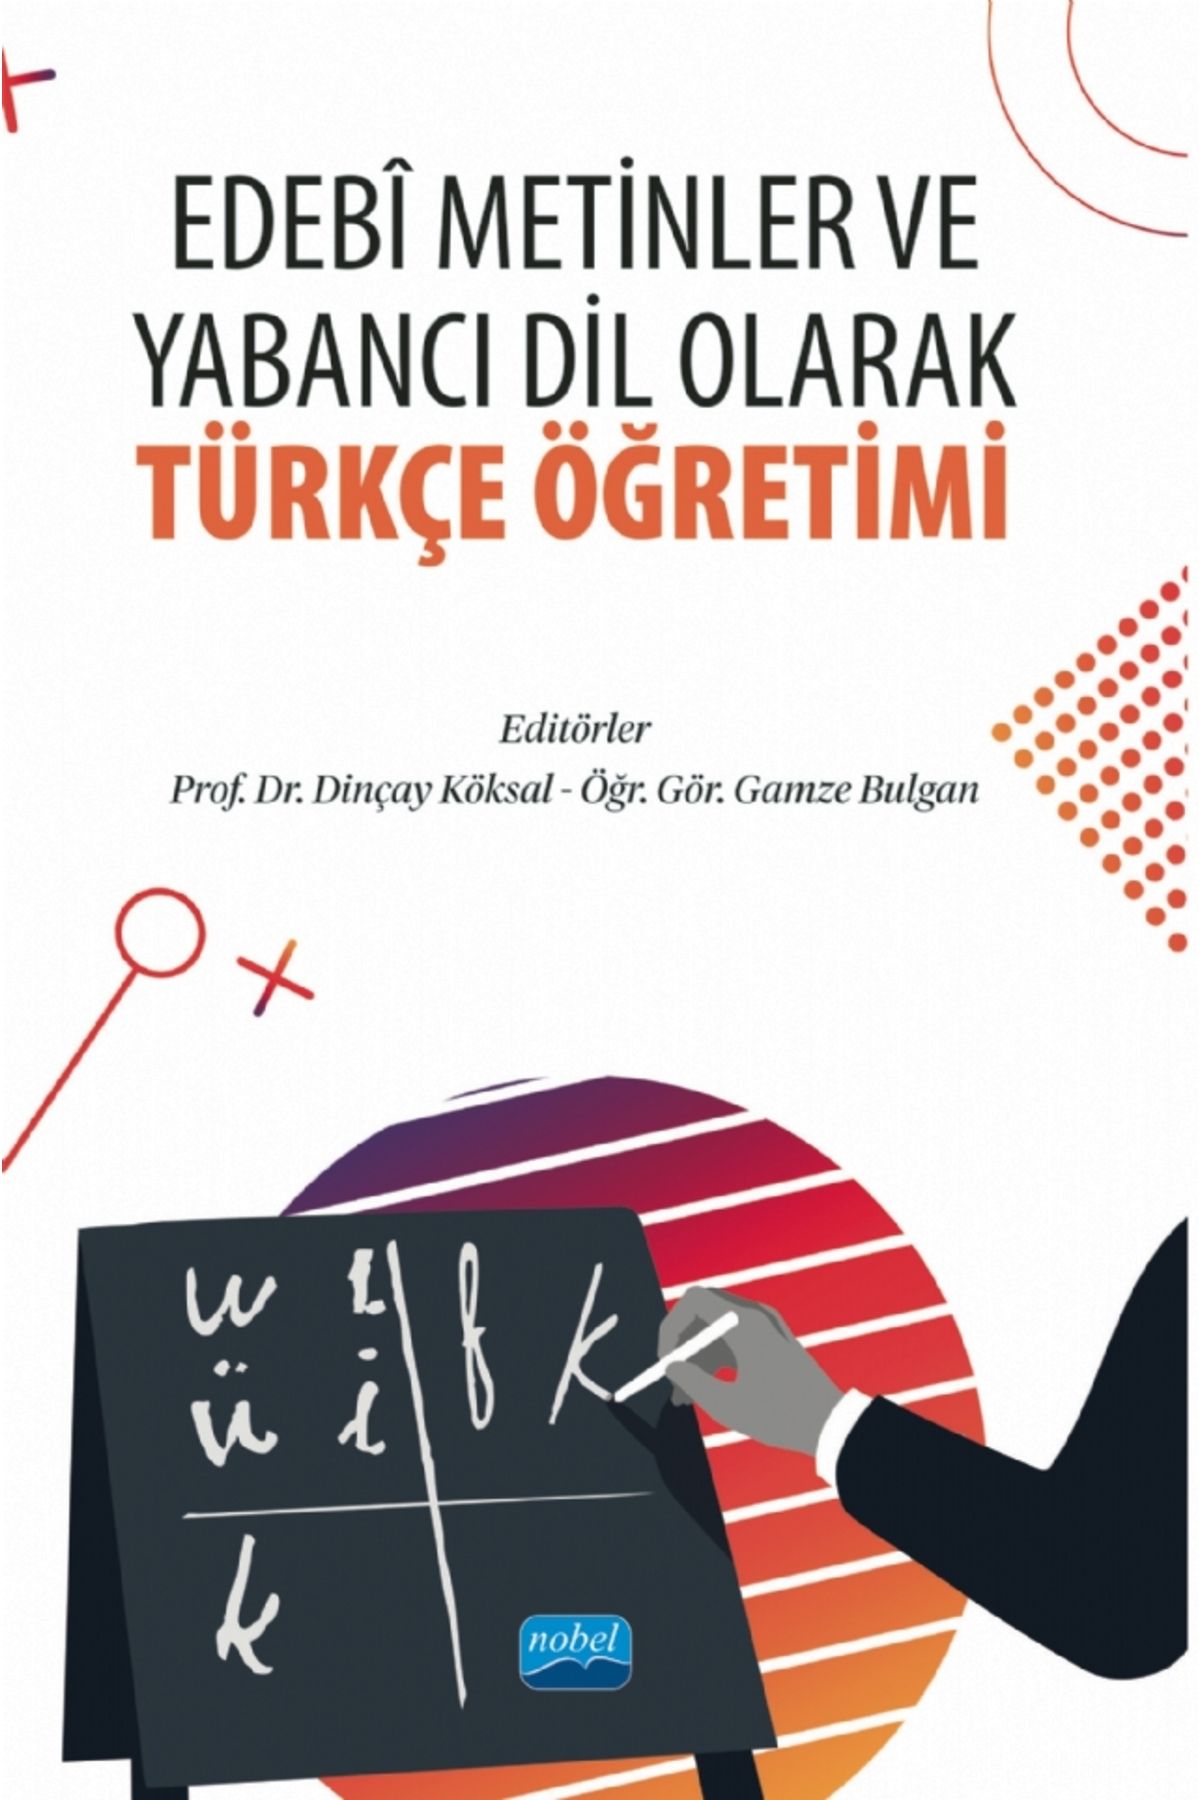 Nobel Akademik Yayıncılık Edebi Metinler ve Yabancı Dil Olarak Türkçe Öğretimi